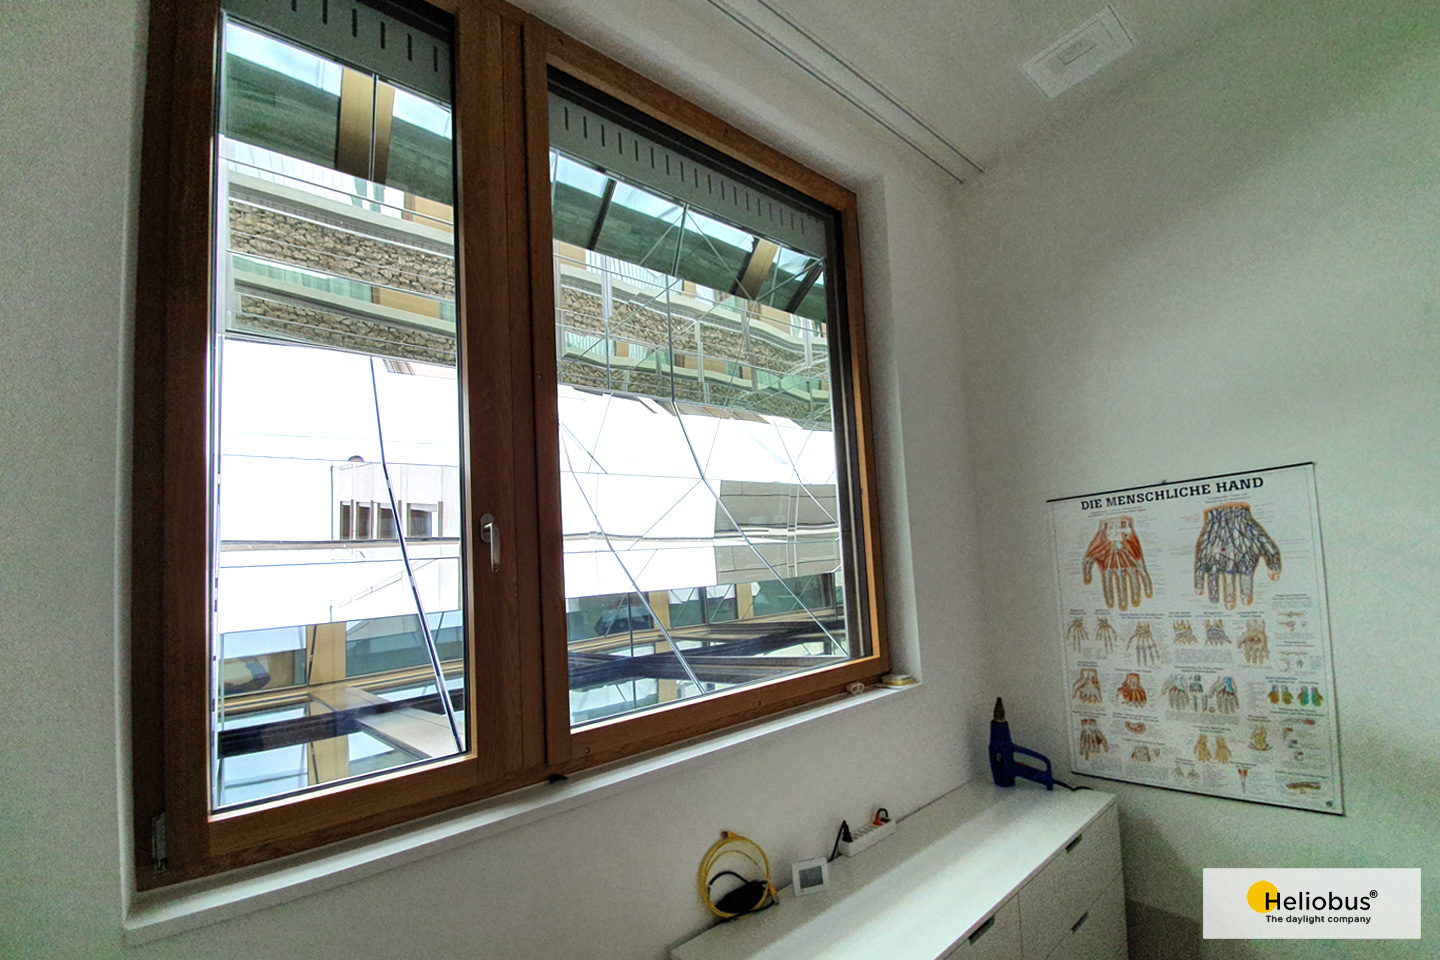 Heliobus Spiegelschacht Tageslichtversorgung für Praxisräume im Untergeschoss.